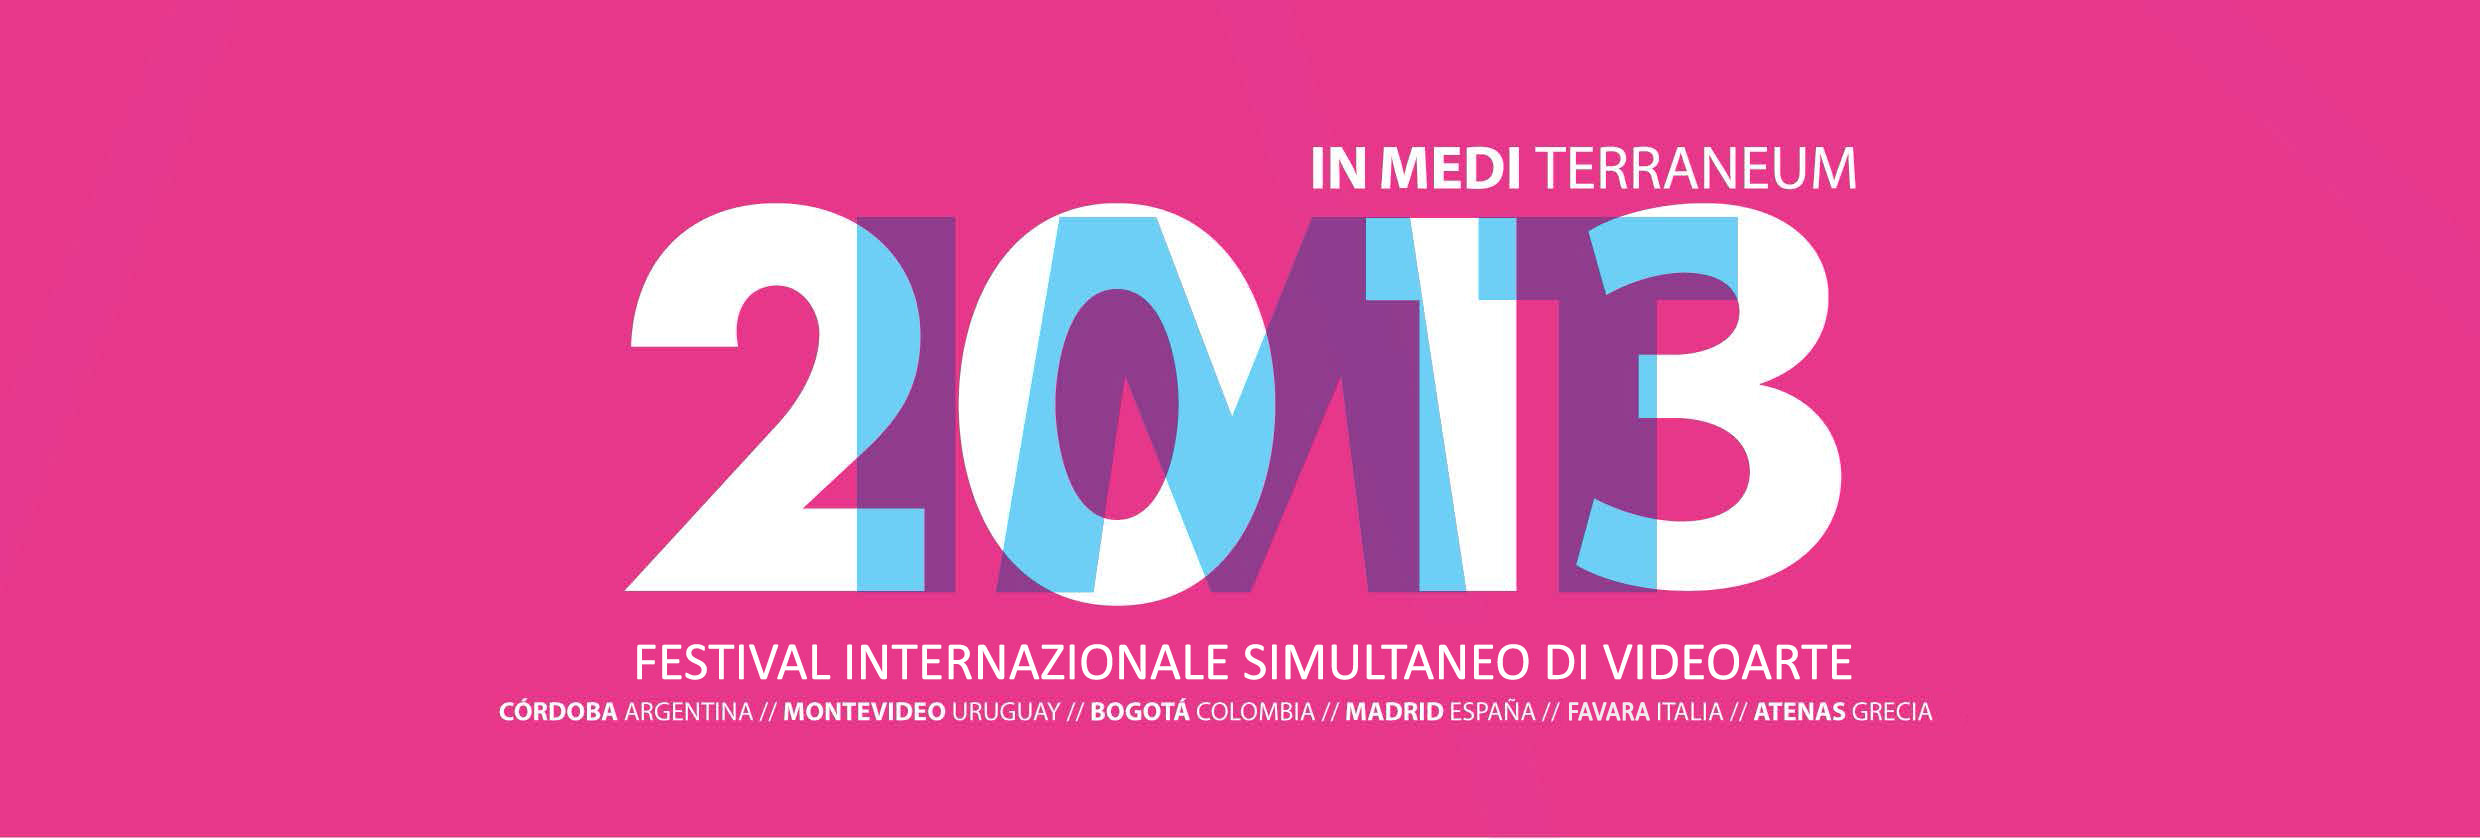 IMT#4 – Festival Internazionale Simultaneo di Video Arte